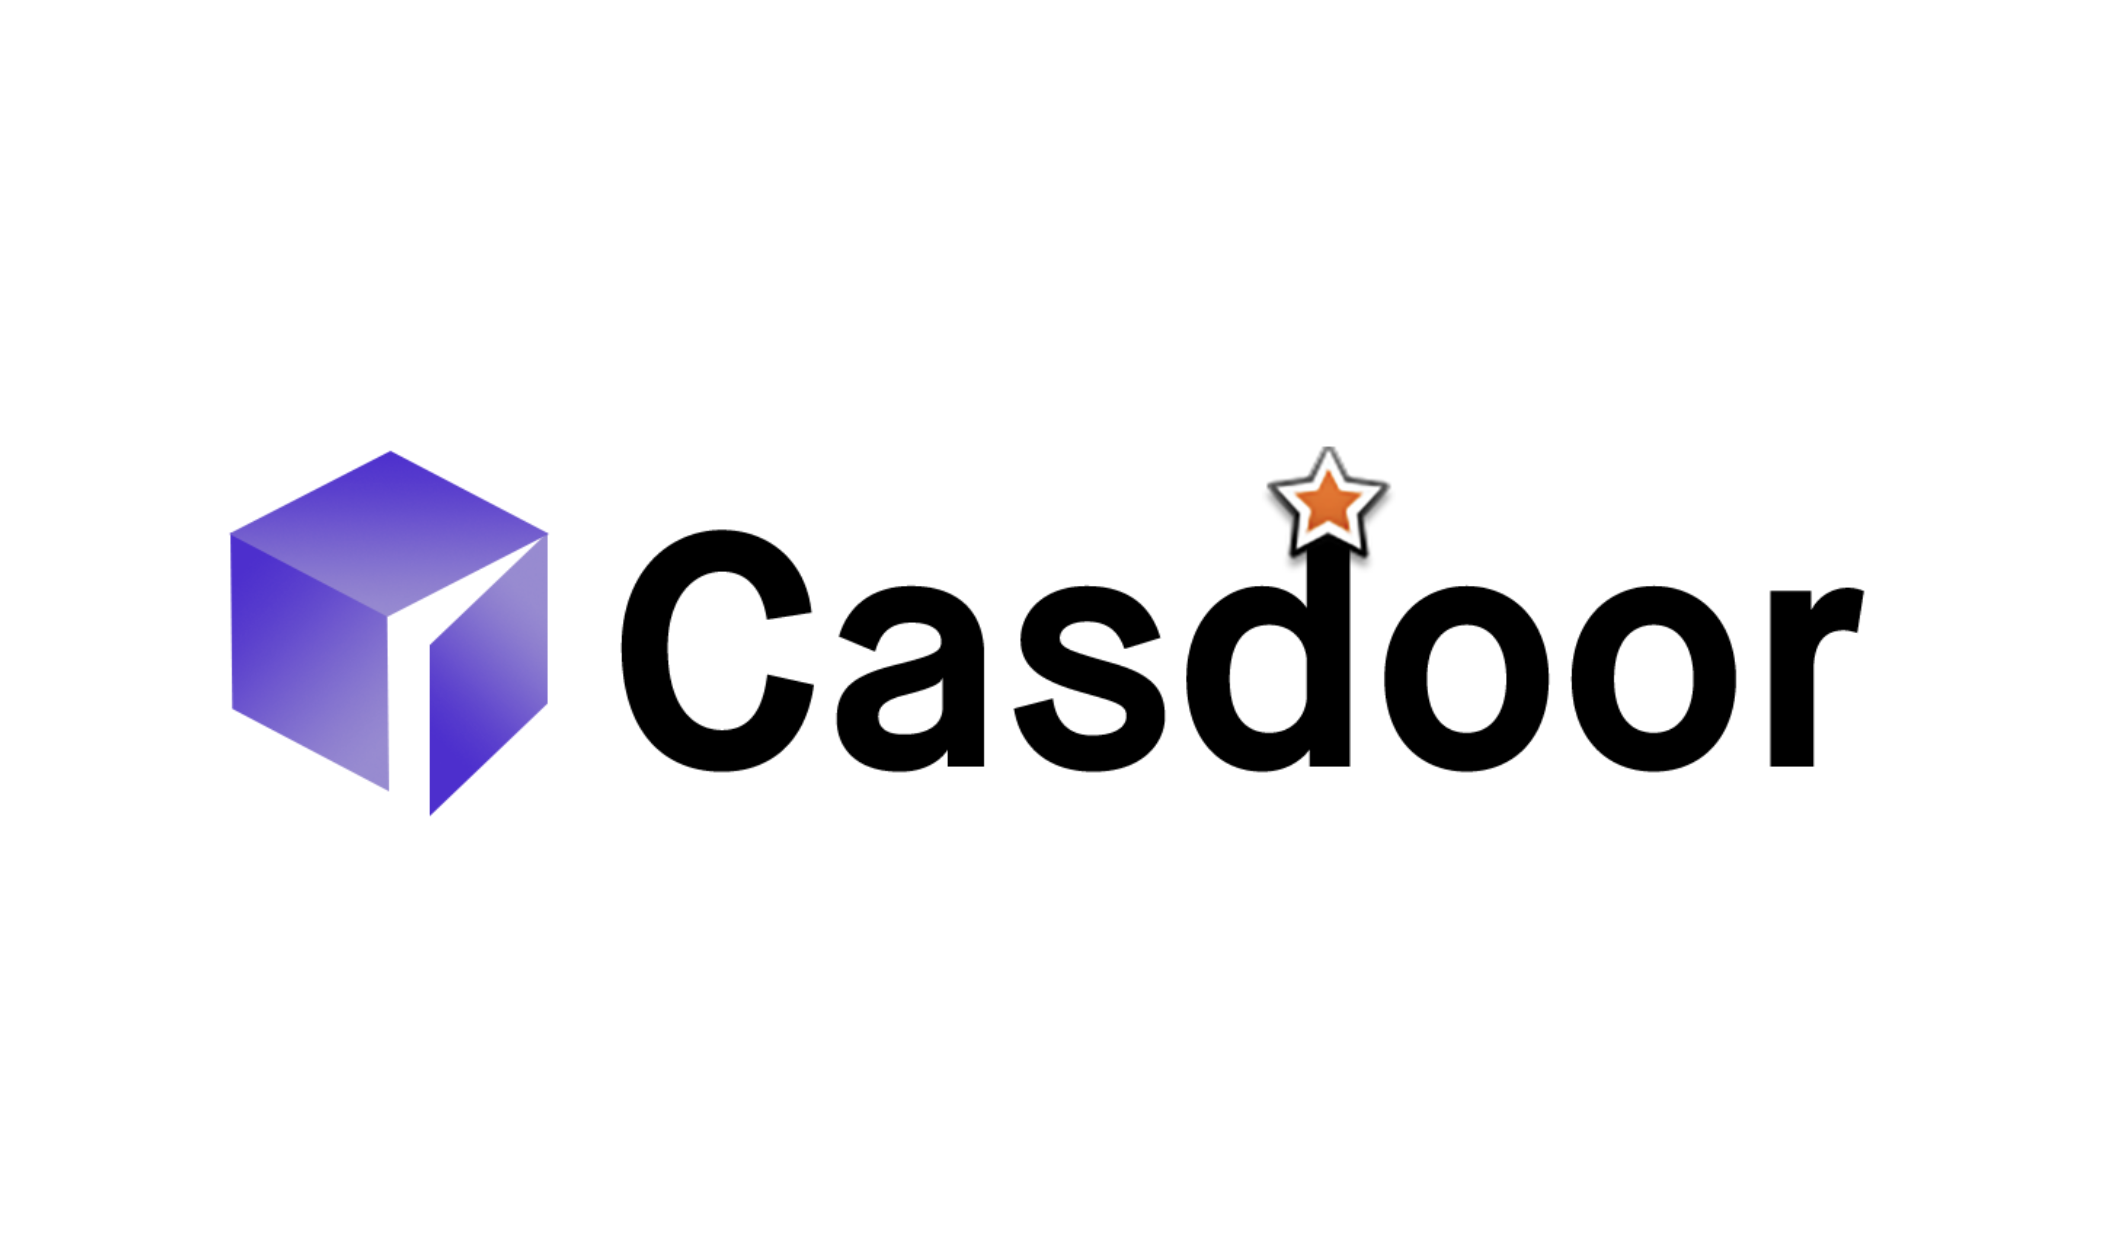 Dans le premier article de cette série, nous avons présenté Casdoor, une plateforme IAM open-source, pour gérer l'accès des utilisateurs dans le développement web. Dans cette suite d'articles, nous allons nous pencher sur la construction d'une application de démonstration React sécurisée.